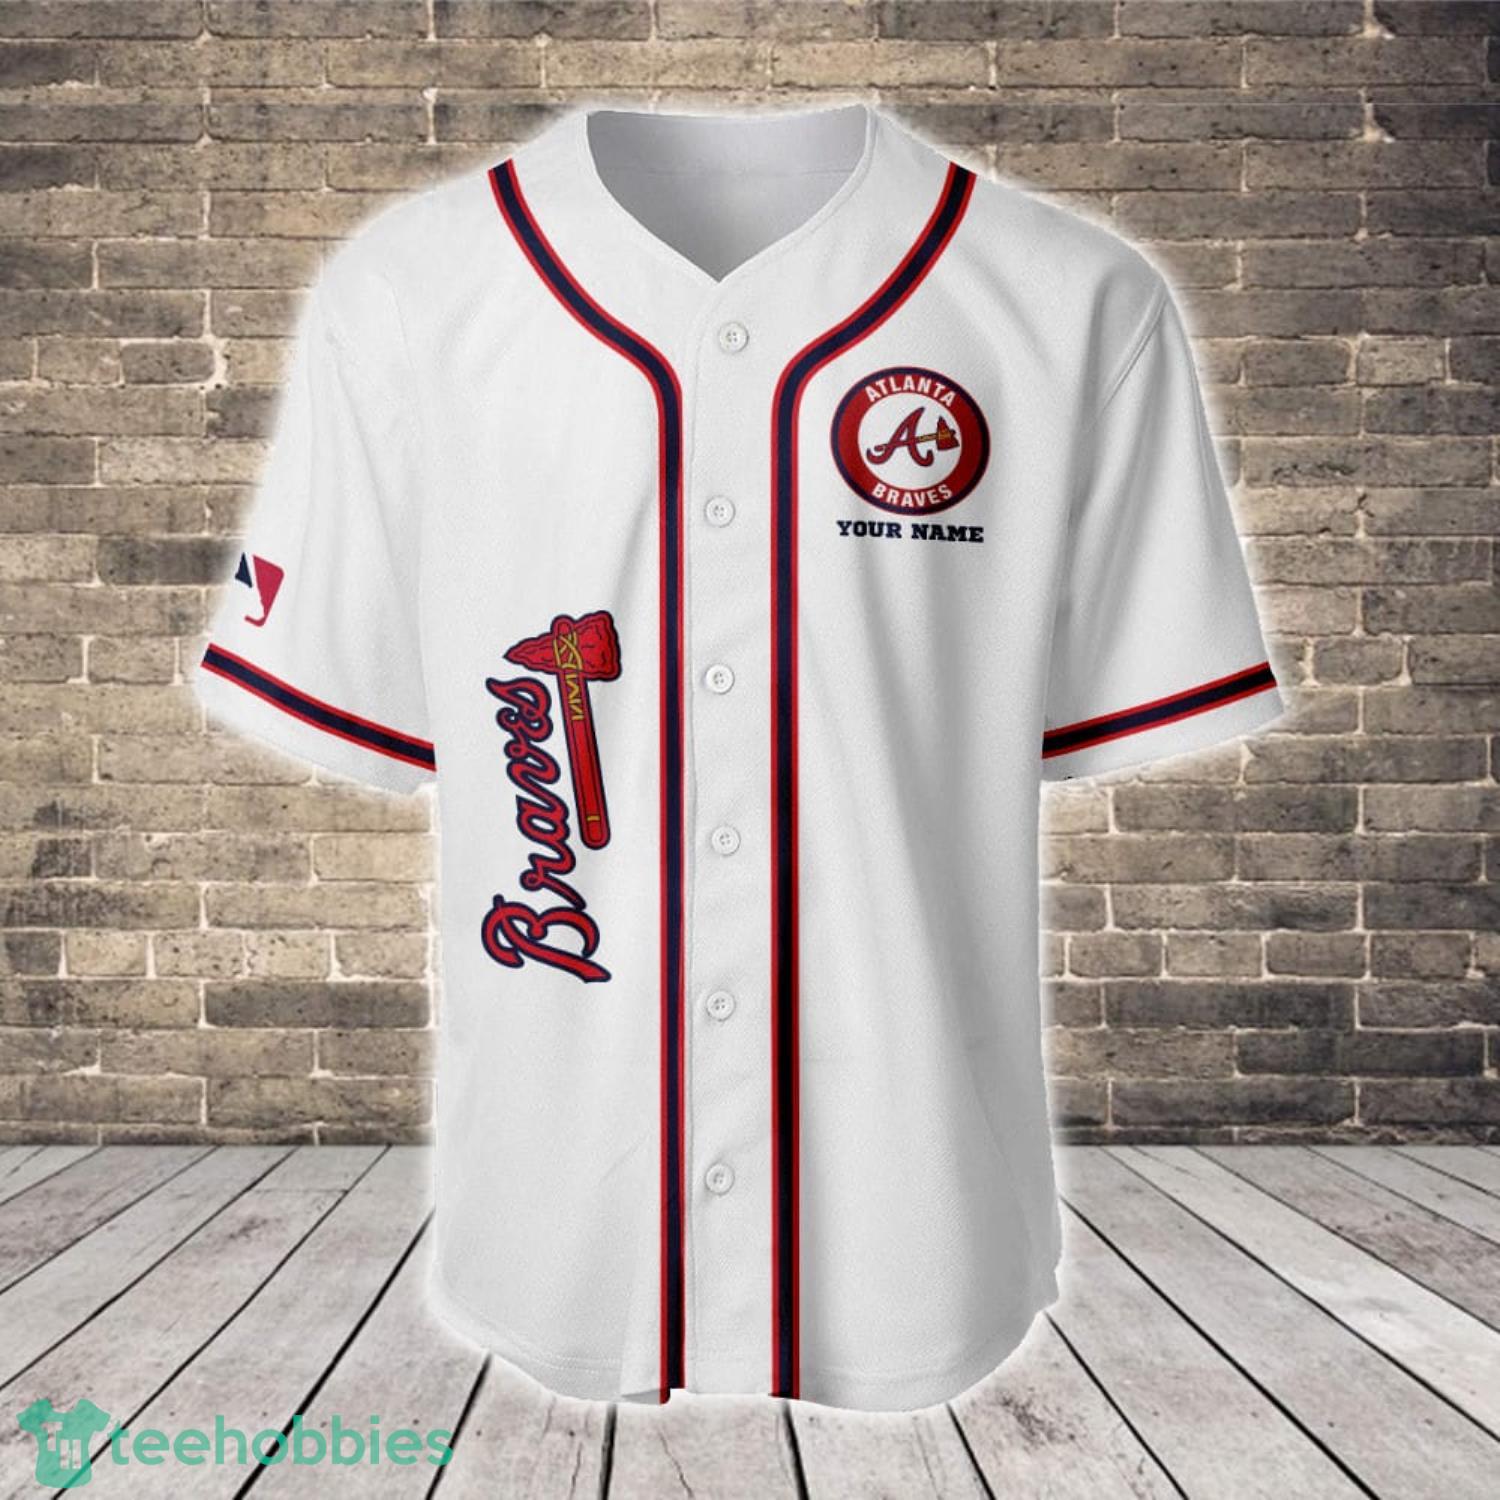 Atlanta Braves Logo MLB Baseball Jersey Shirt For Men And Women -  Freedomdesign